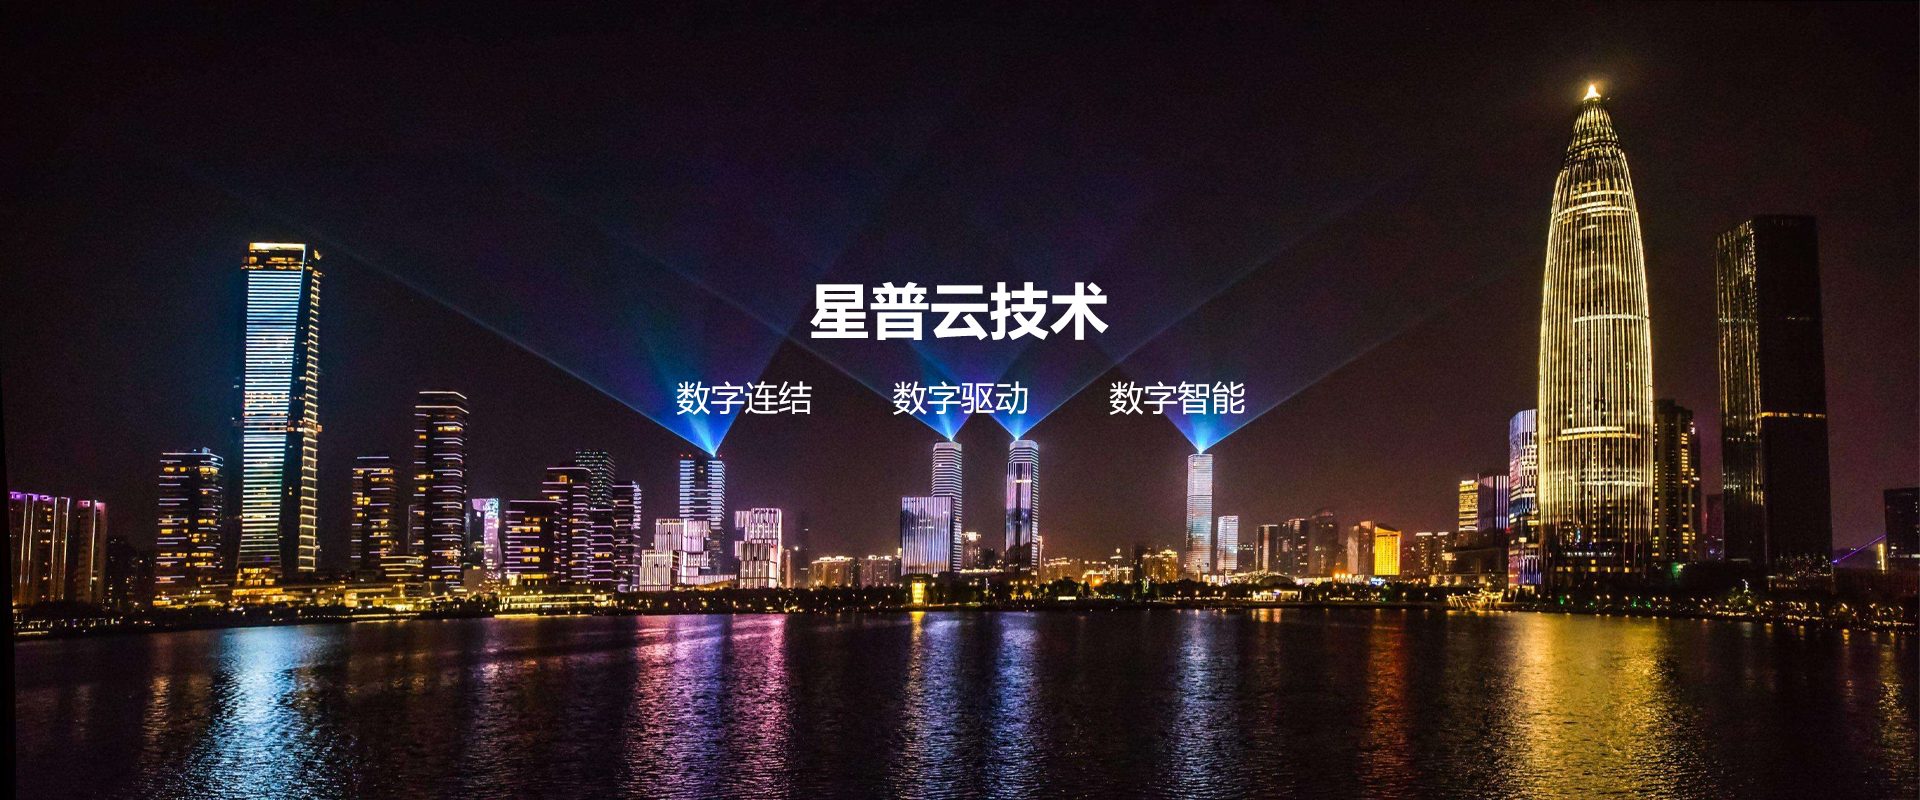 深圳星普云技术有限公司与我司签订网站建设协议